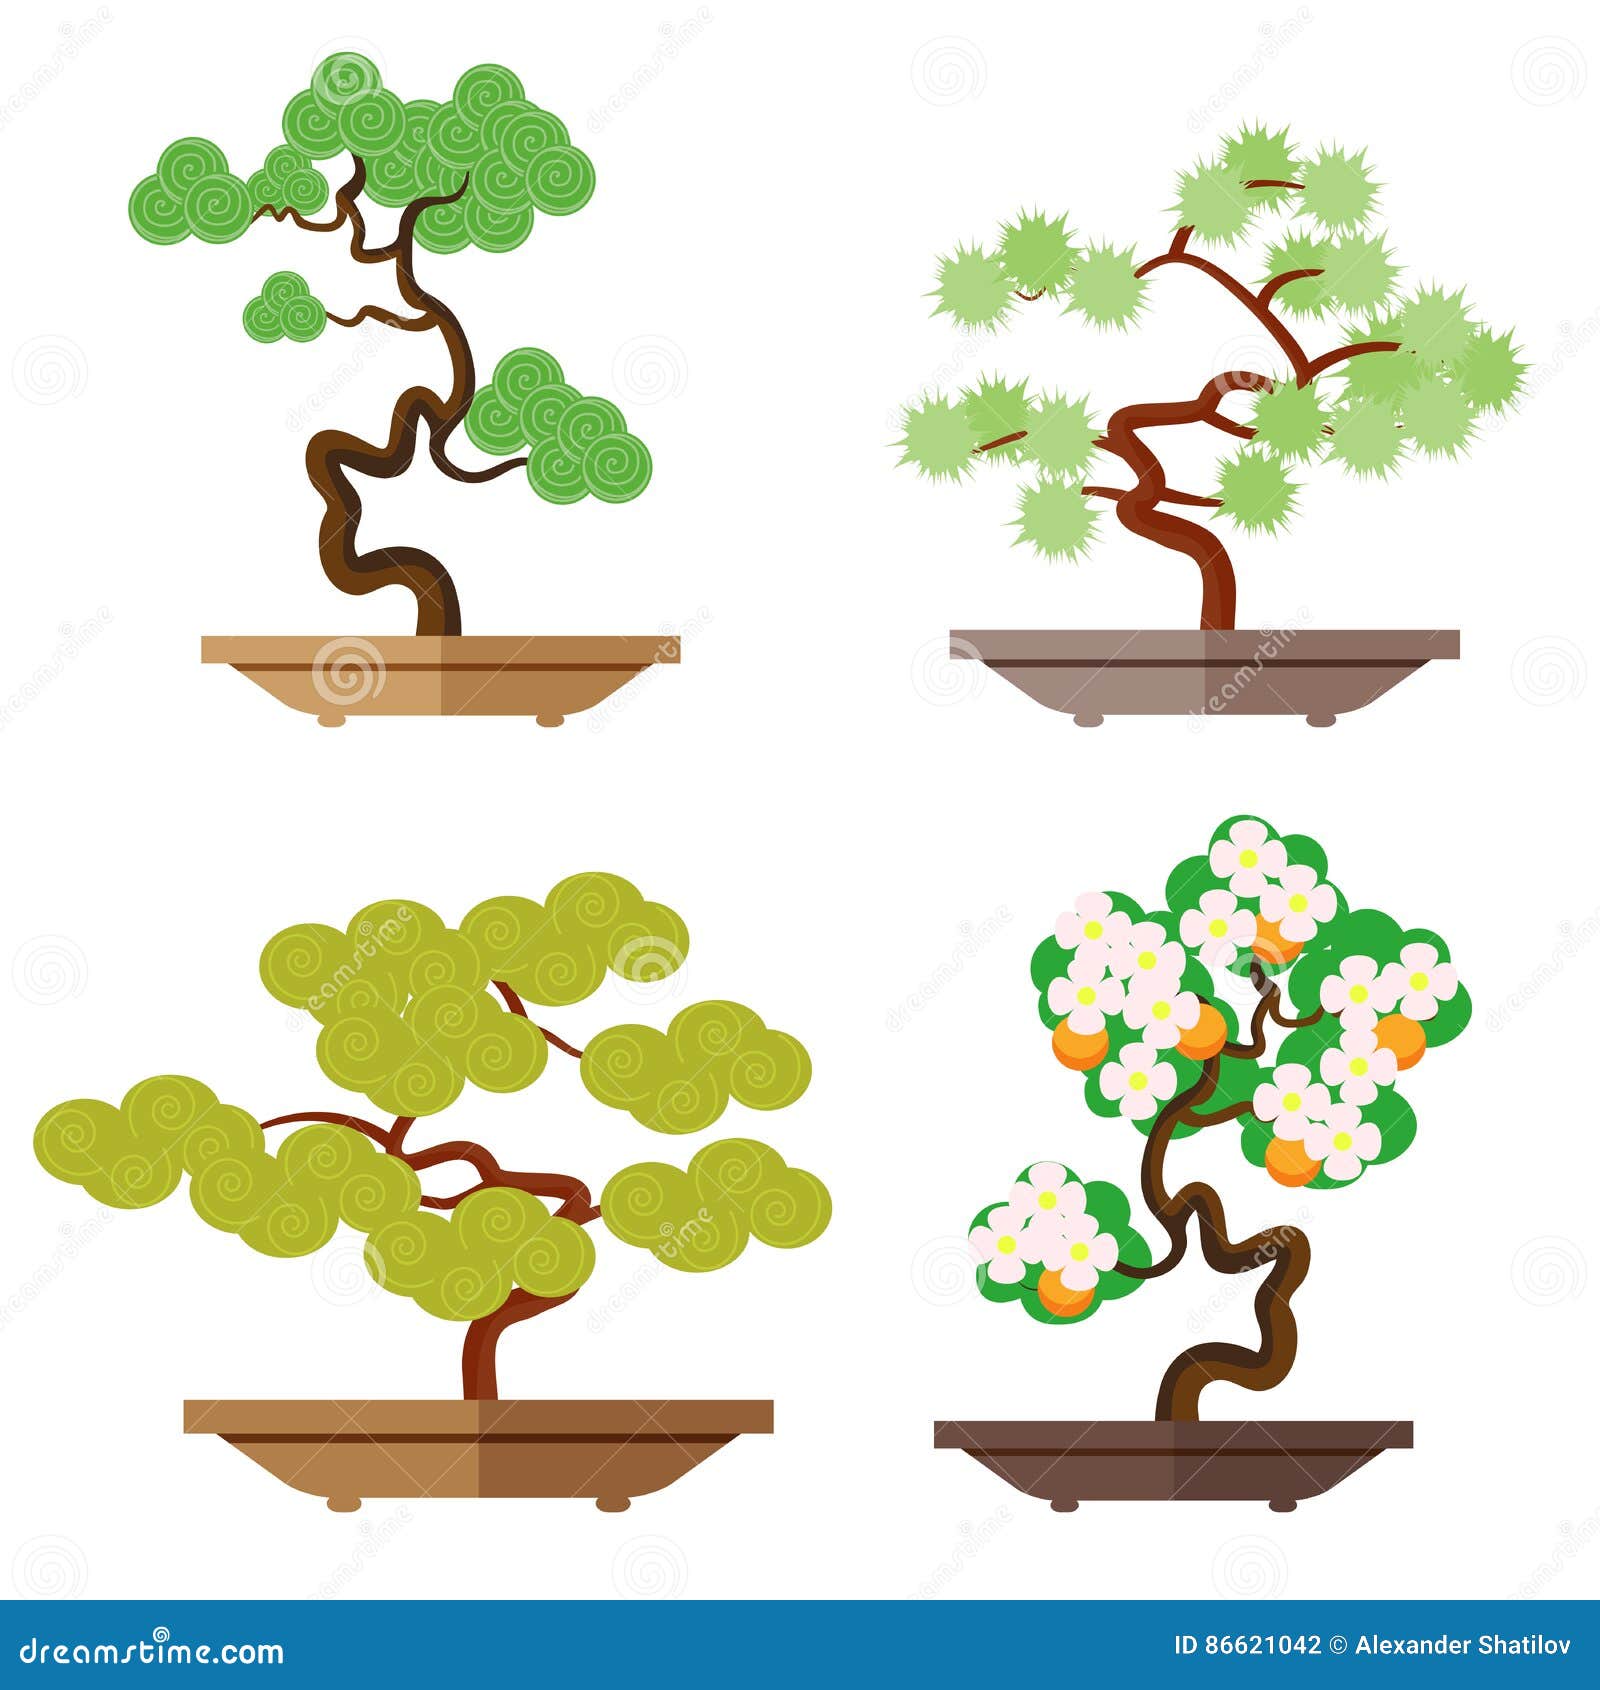 Set de culture de bonsaï, Culture